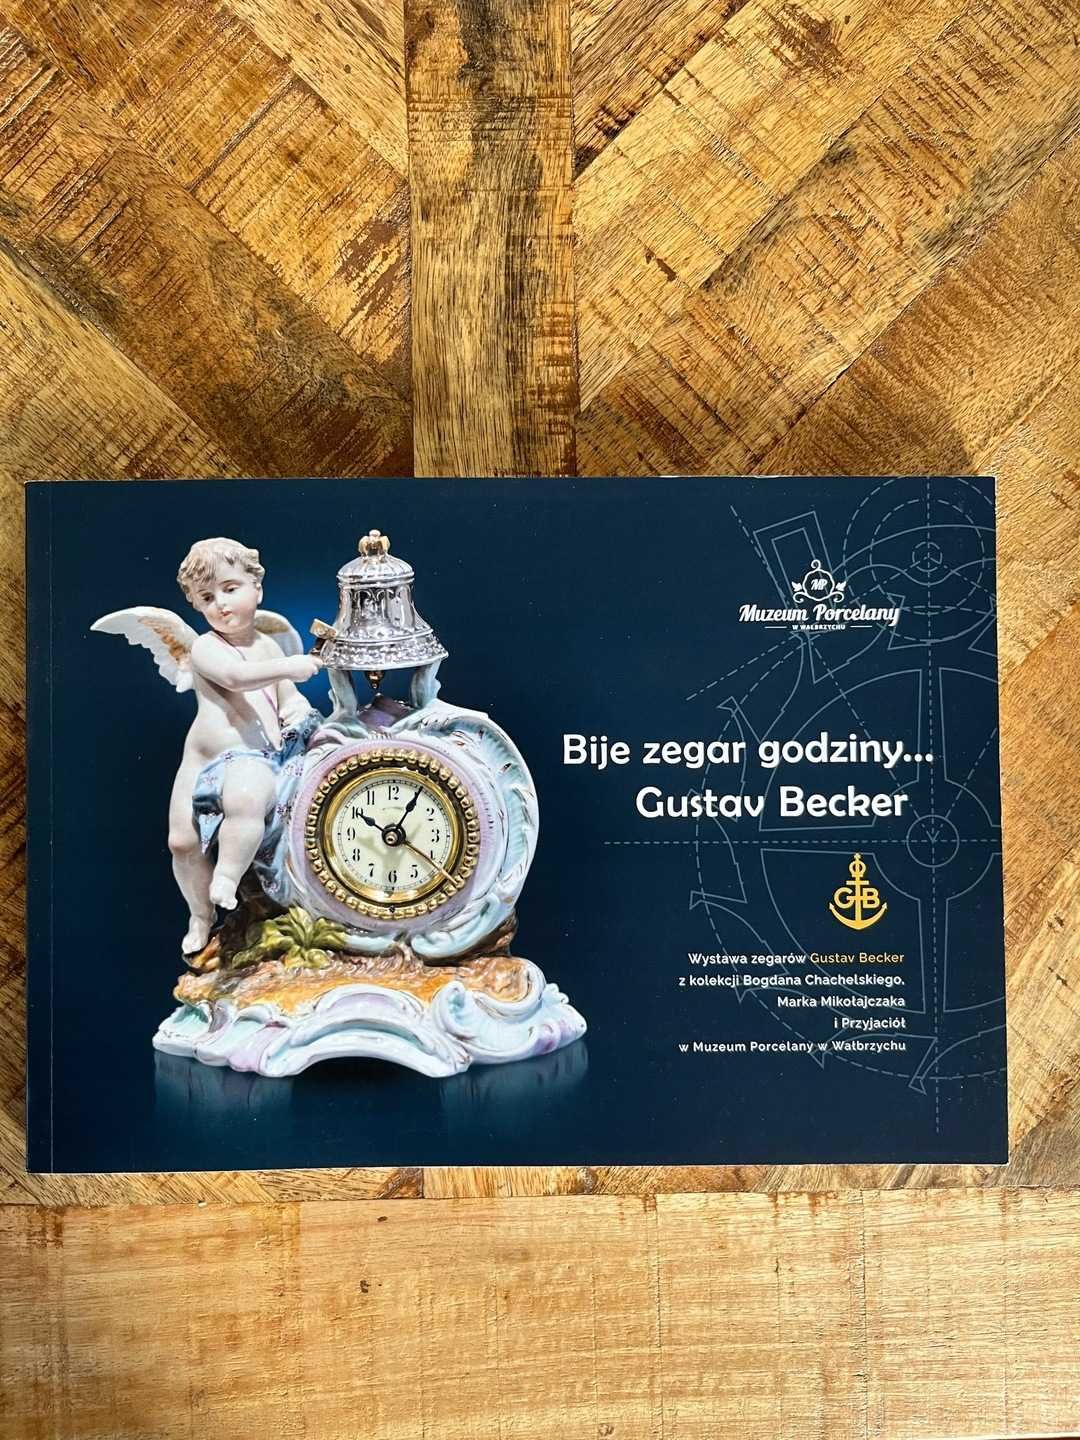 Gustav Becker zegarmistrz katalog zegarów kolekcji Chachelskiego Zegar